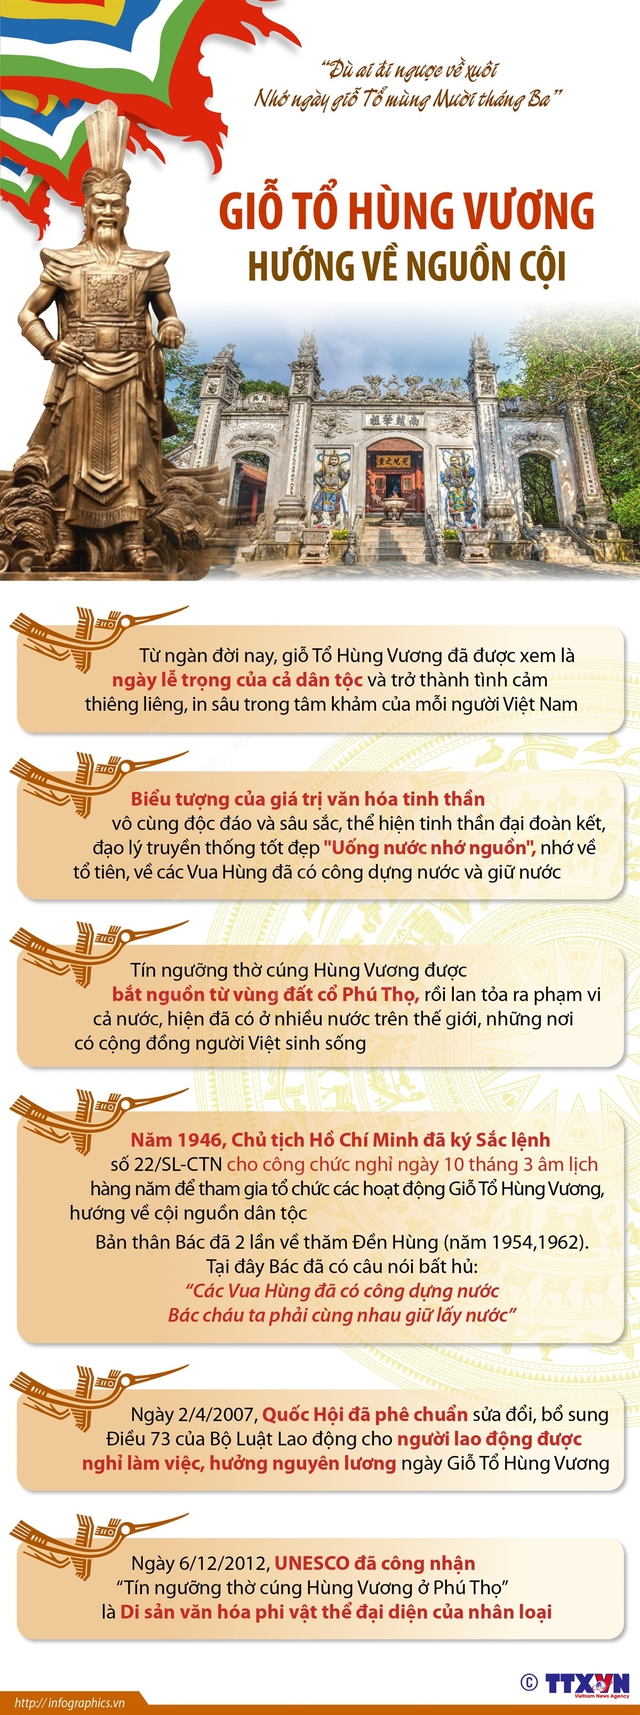 Nhà nước Văn Lang thời Hùng Vương đã có thành tựu gì?